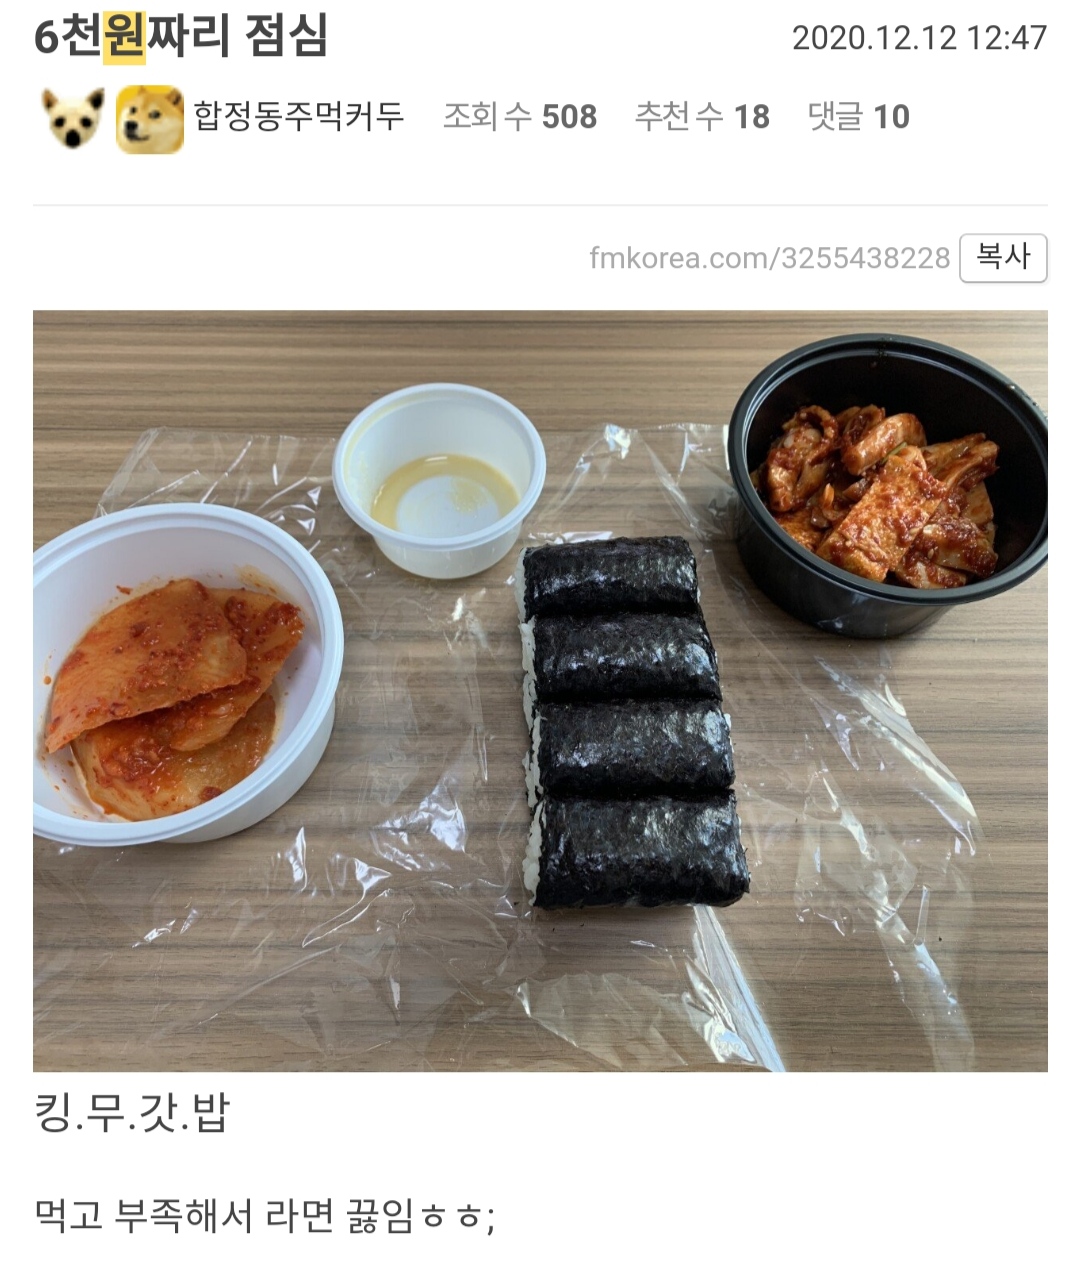 김밥 1인분 6,000원 호불호